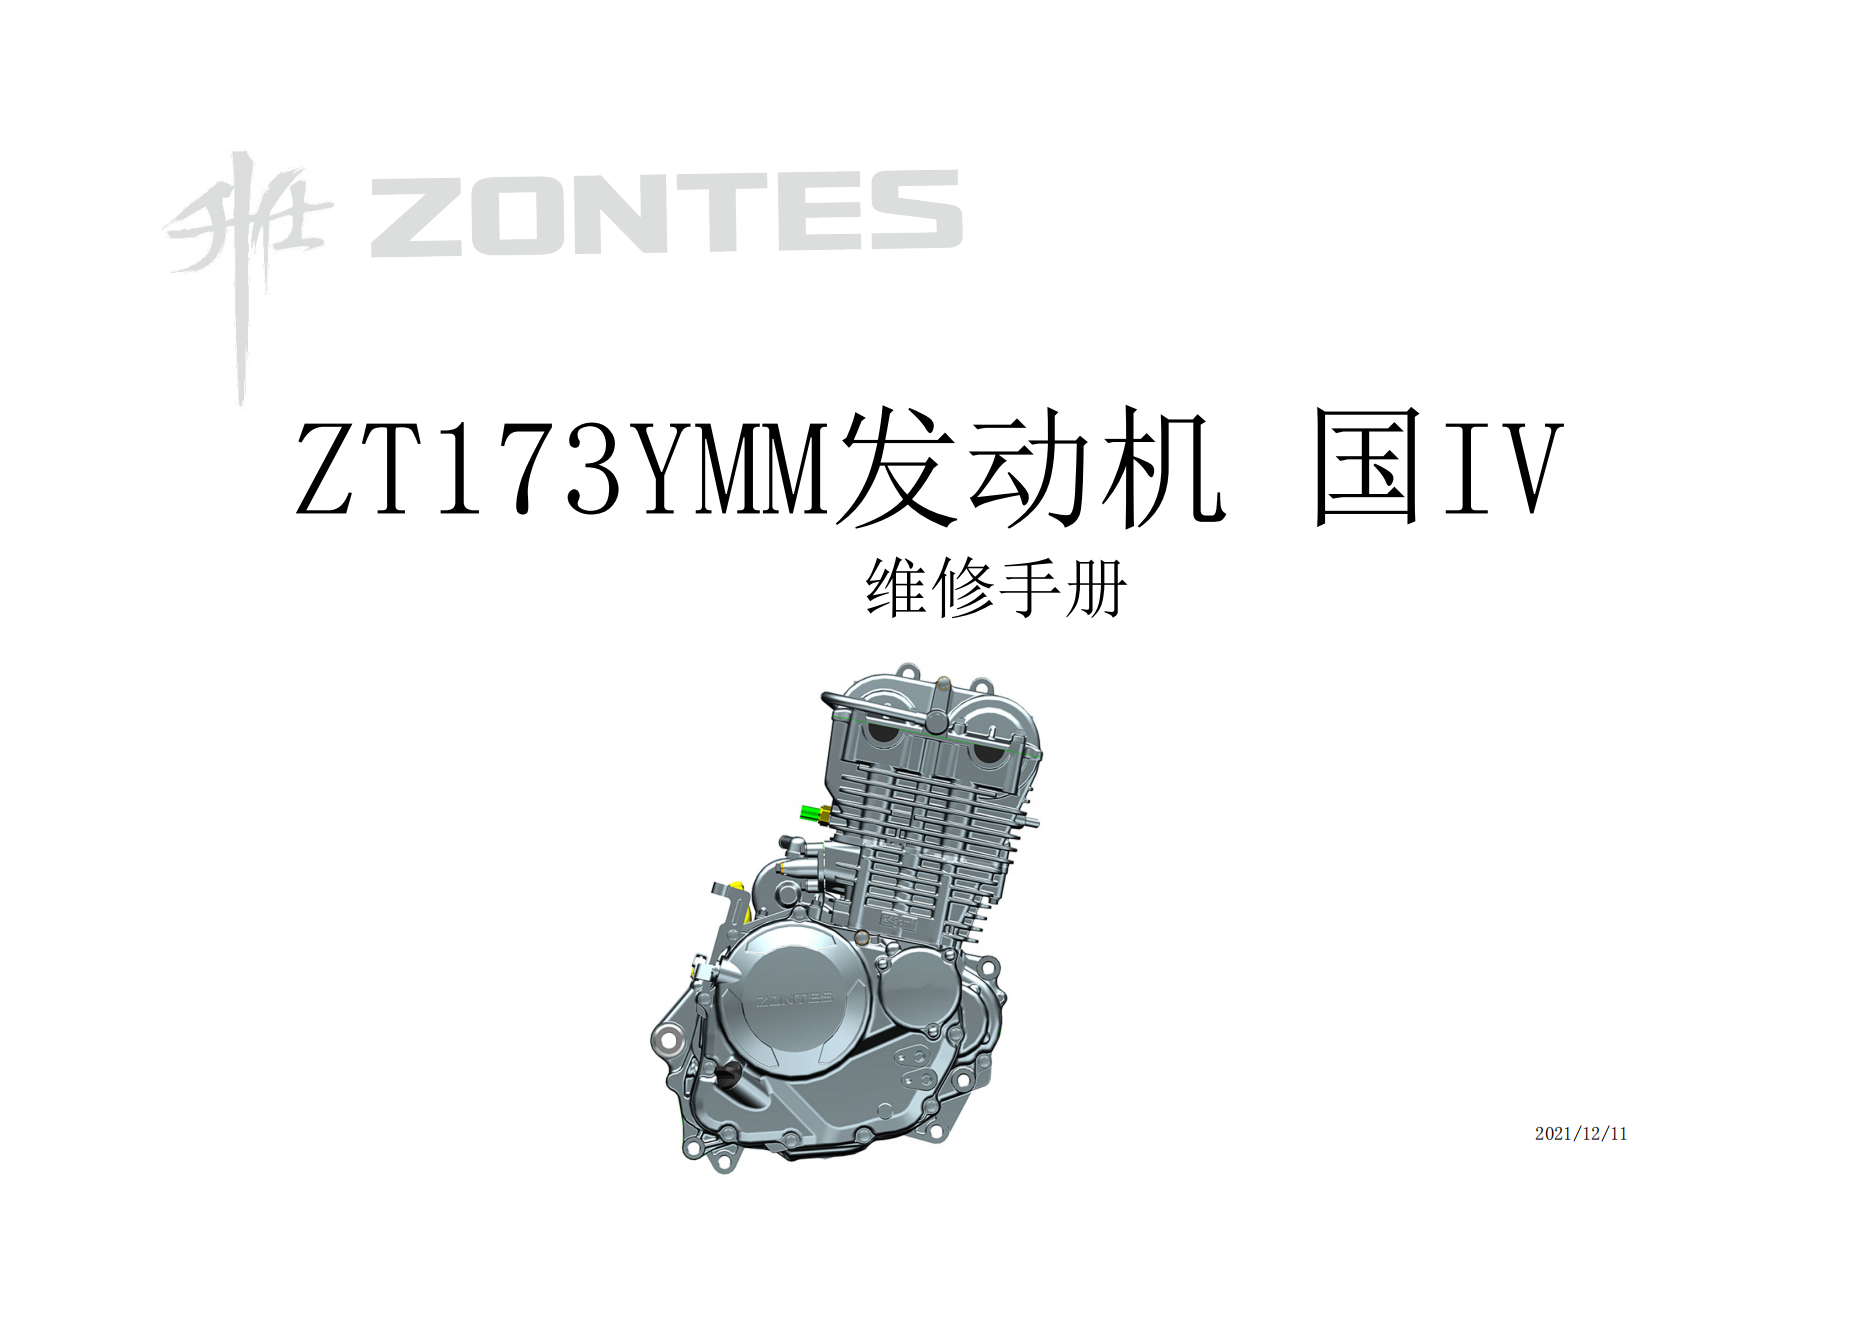 升仕ZT173YMM发动机维修手册适用于250排量档车如250r插图